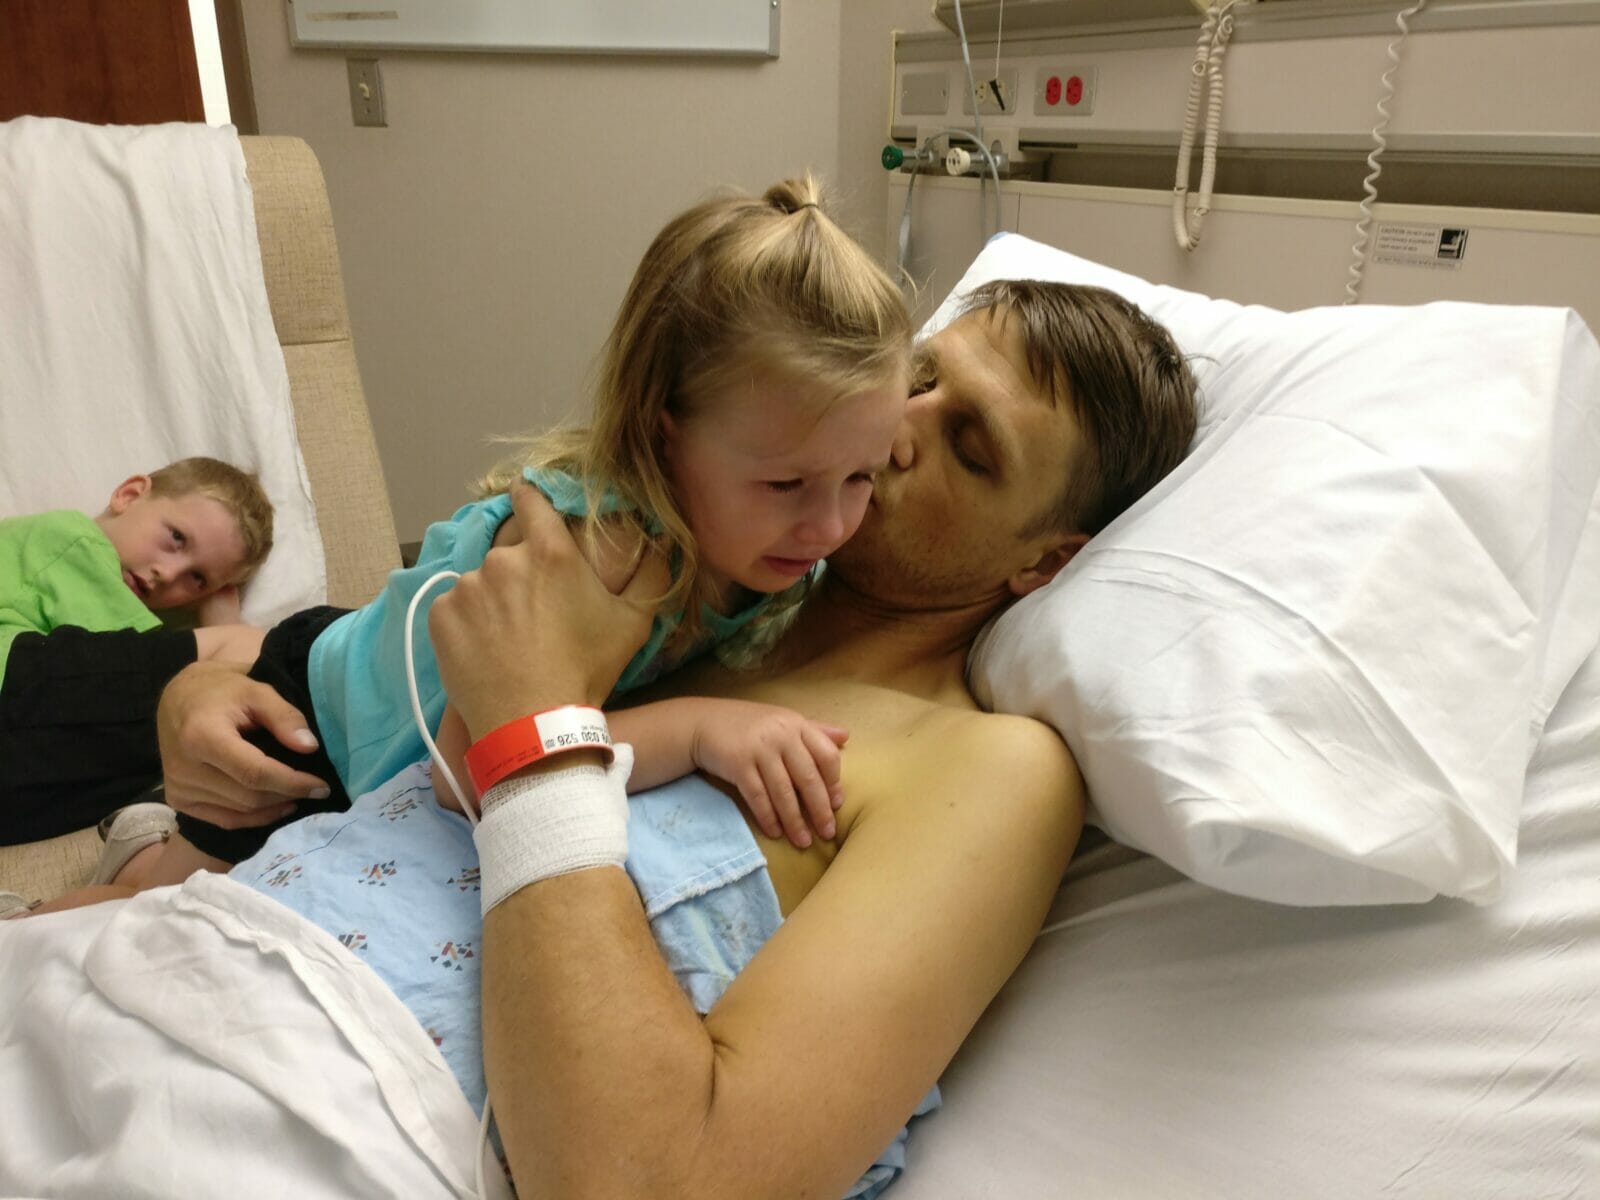 Padre en cama de hospital consuela a niños llorosos y preocupados.